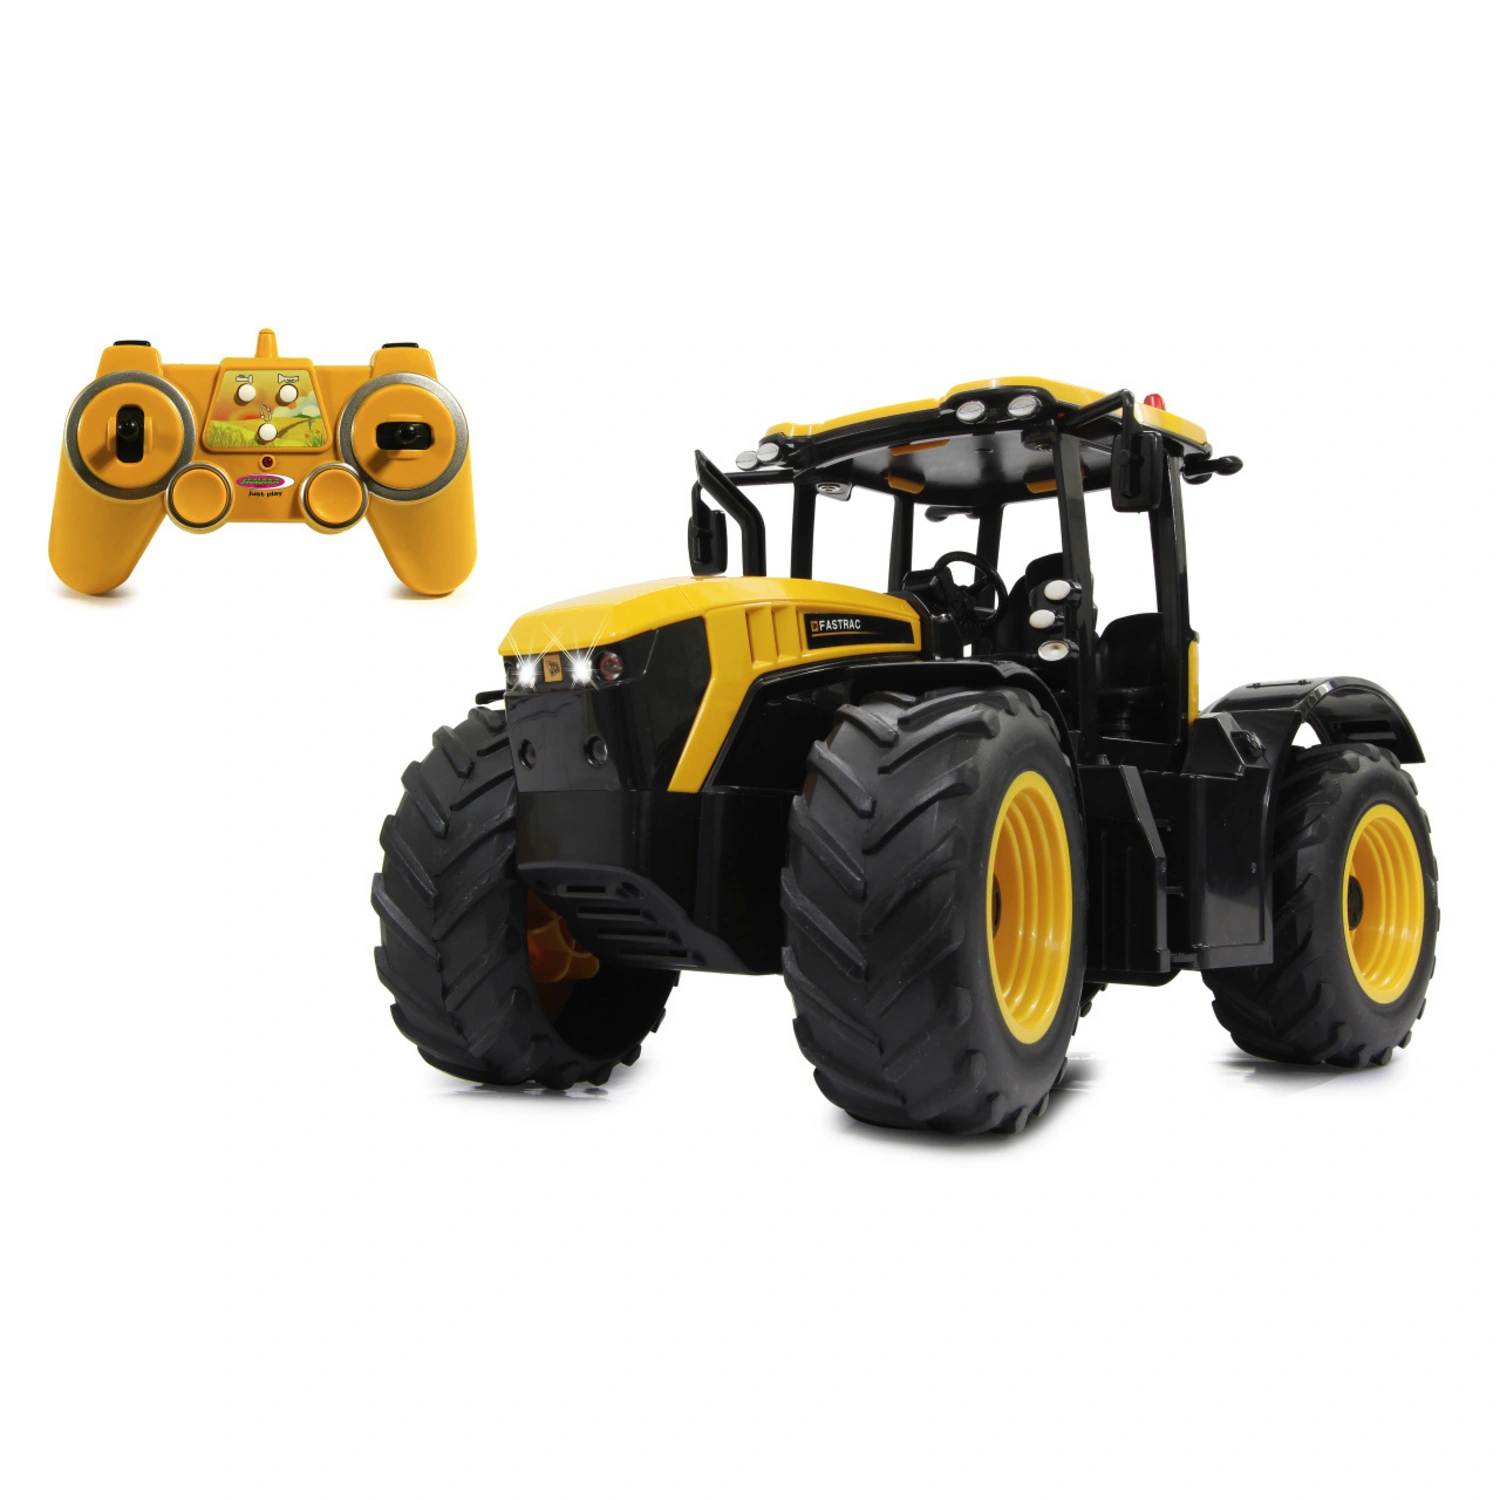 JAMARA Spielzeug-Traktor, BxL: 17,5 x 36 cm, Ab 6 Jahren 